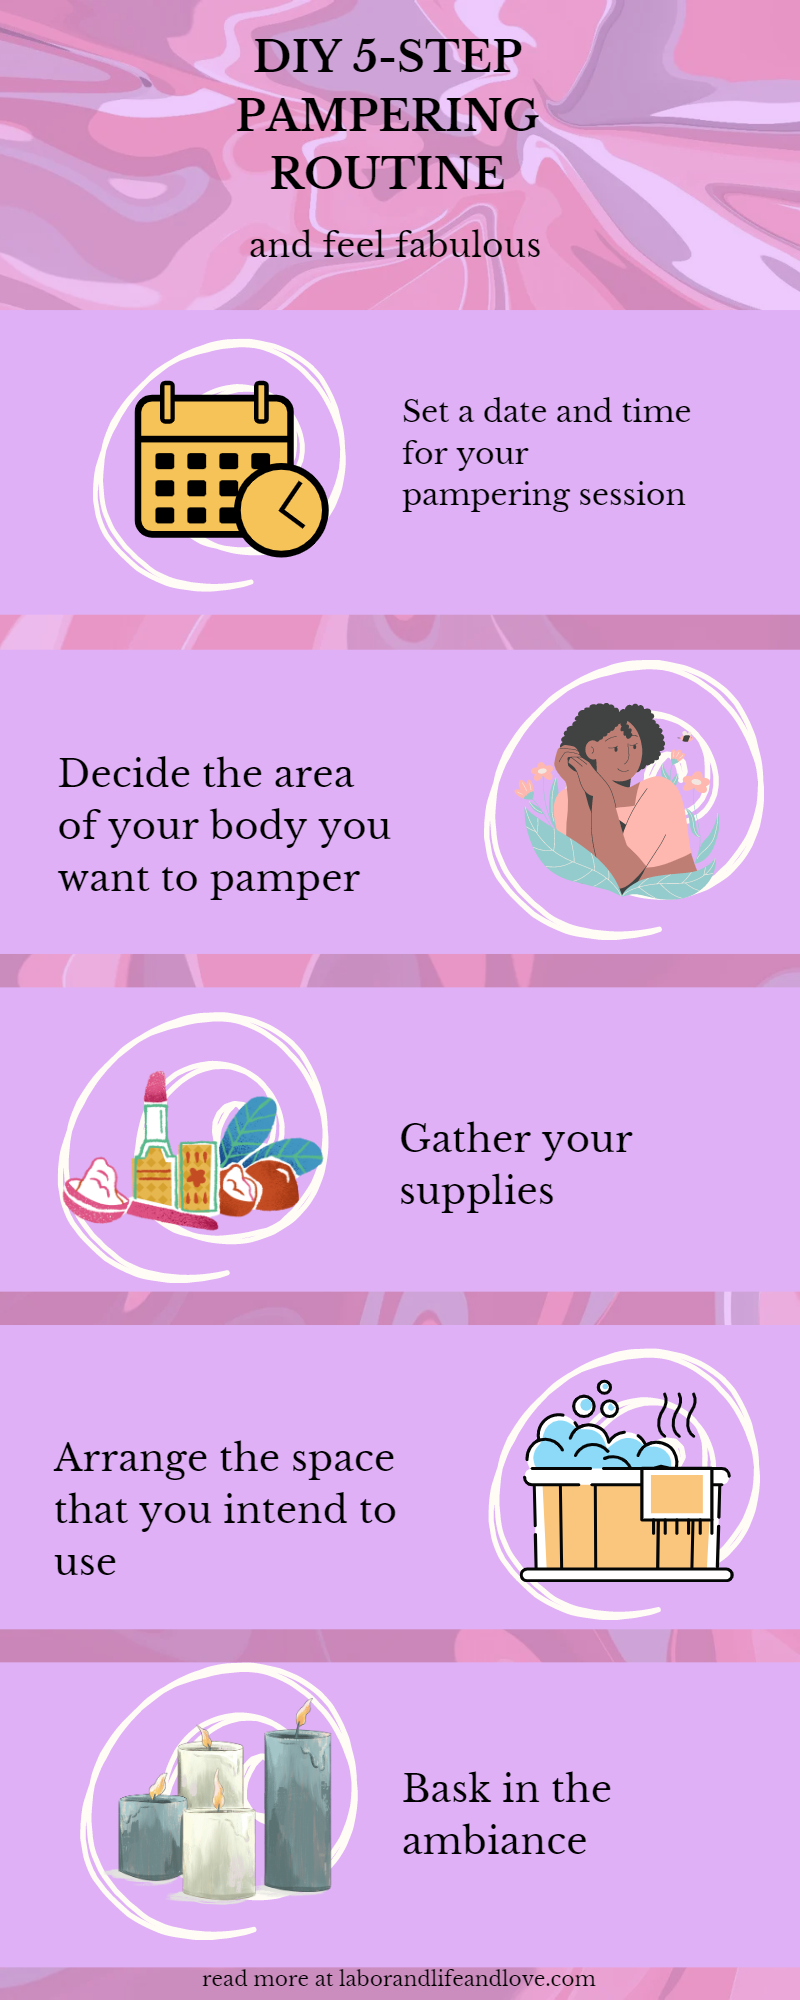 DIY 5-step pampering routine